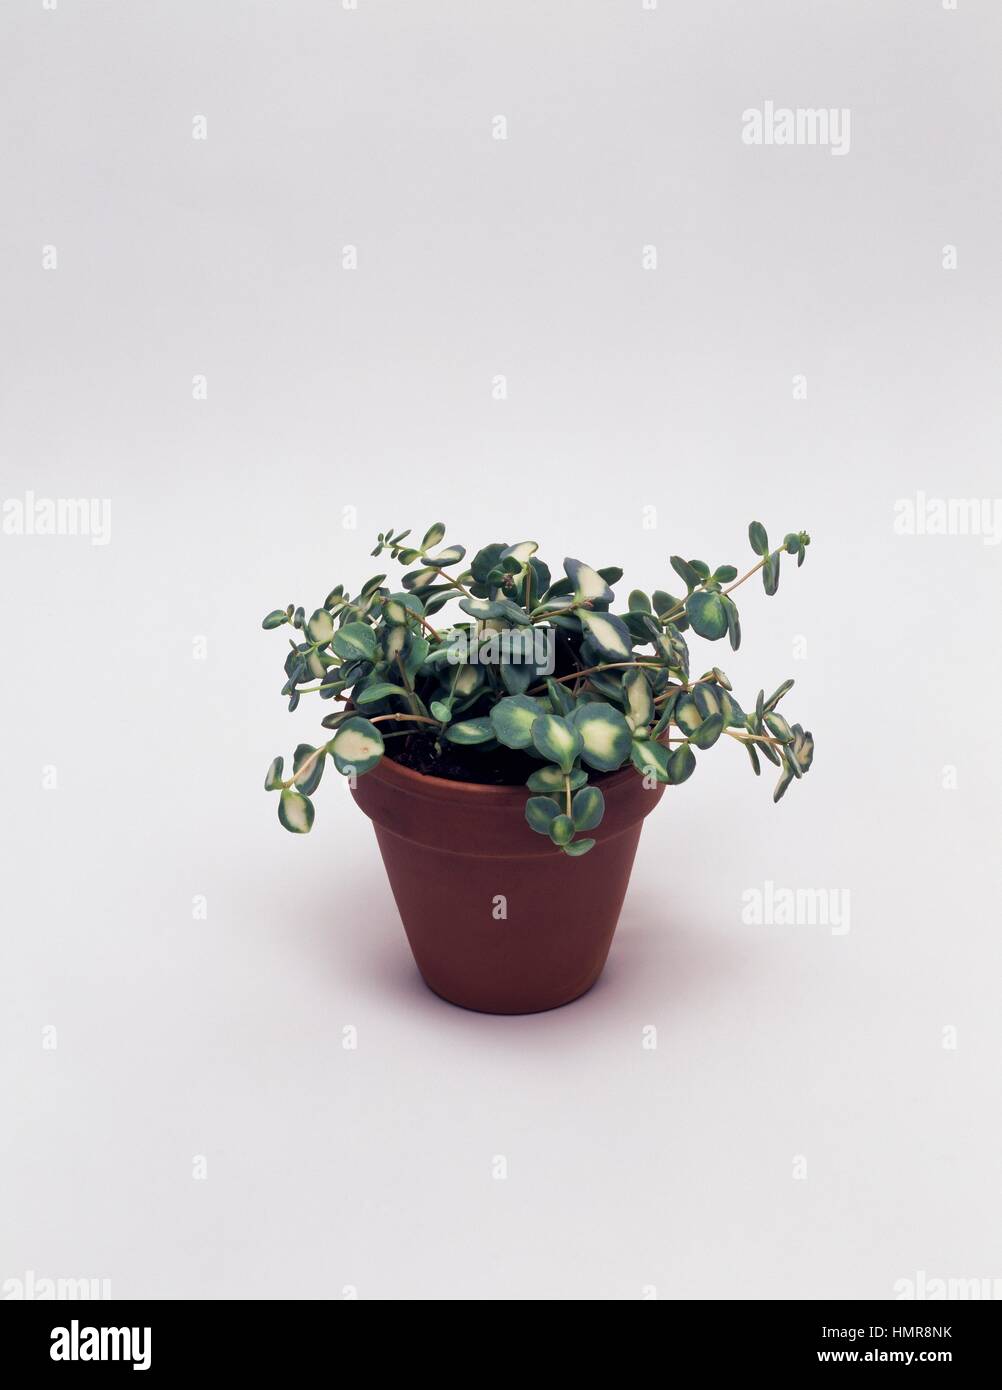 Stonecrops (Sedum sp), Crassulaceae. Stock Photo